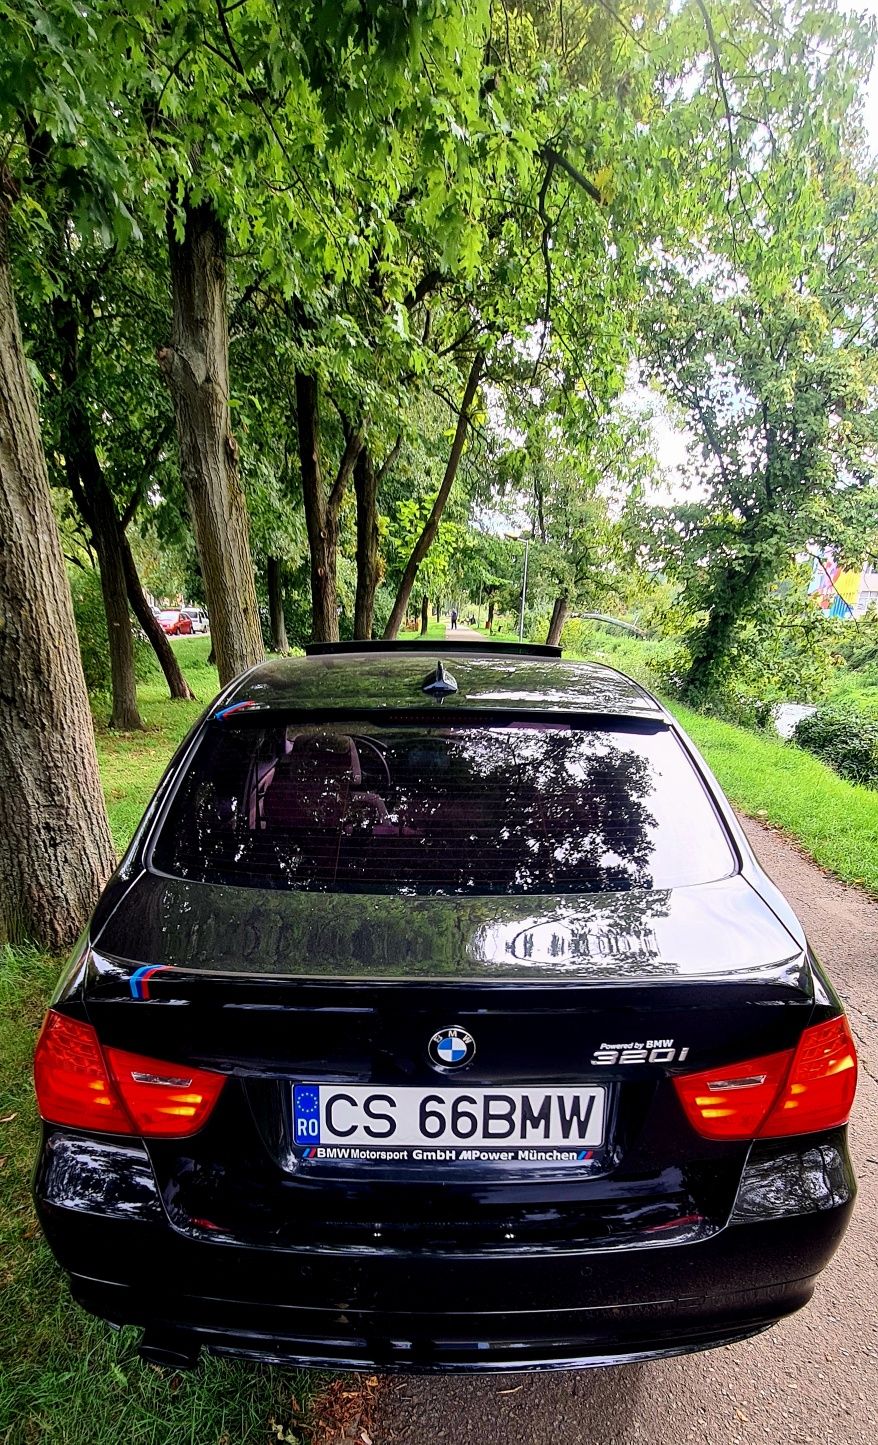 Vând BMW 320i/1995cmc/174ps/2011 facelift